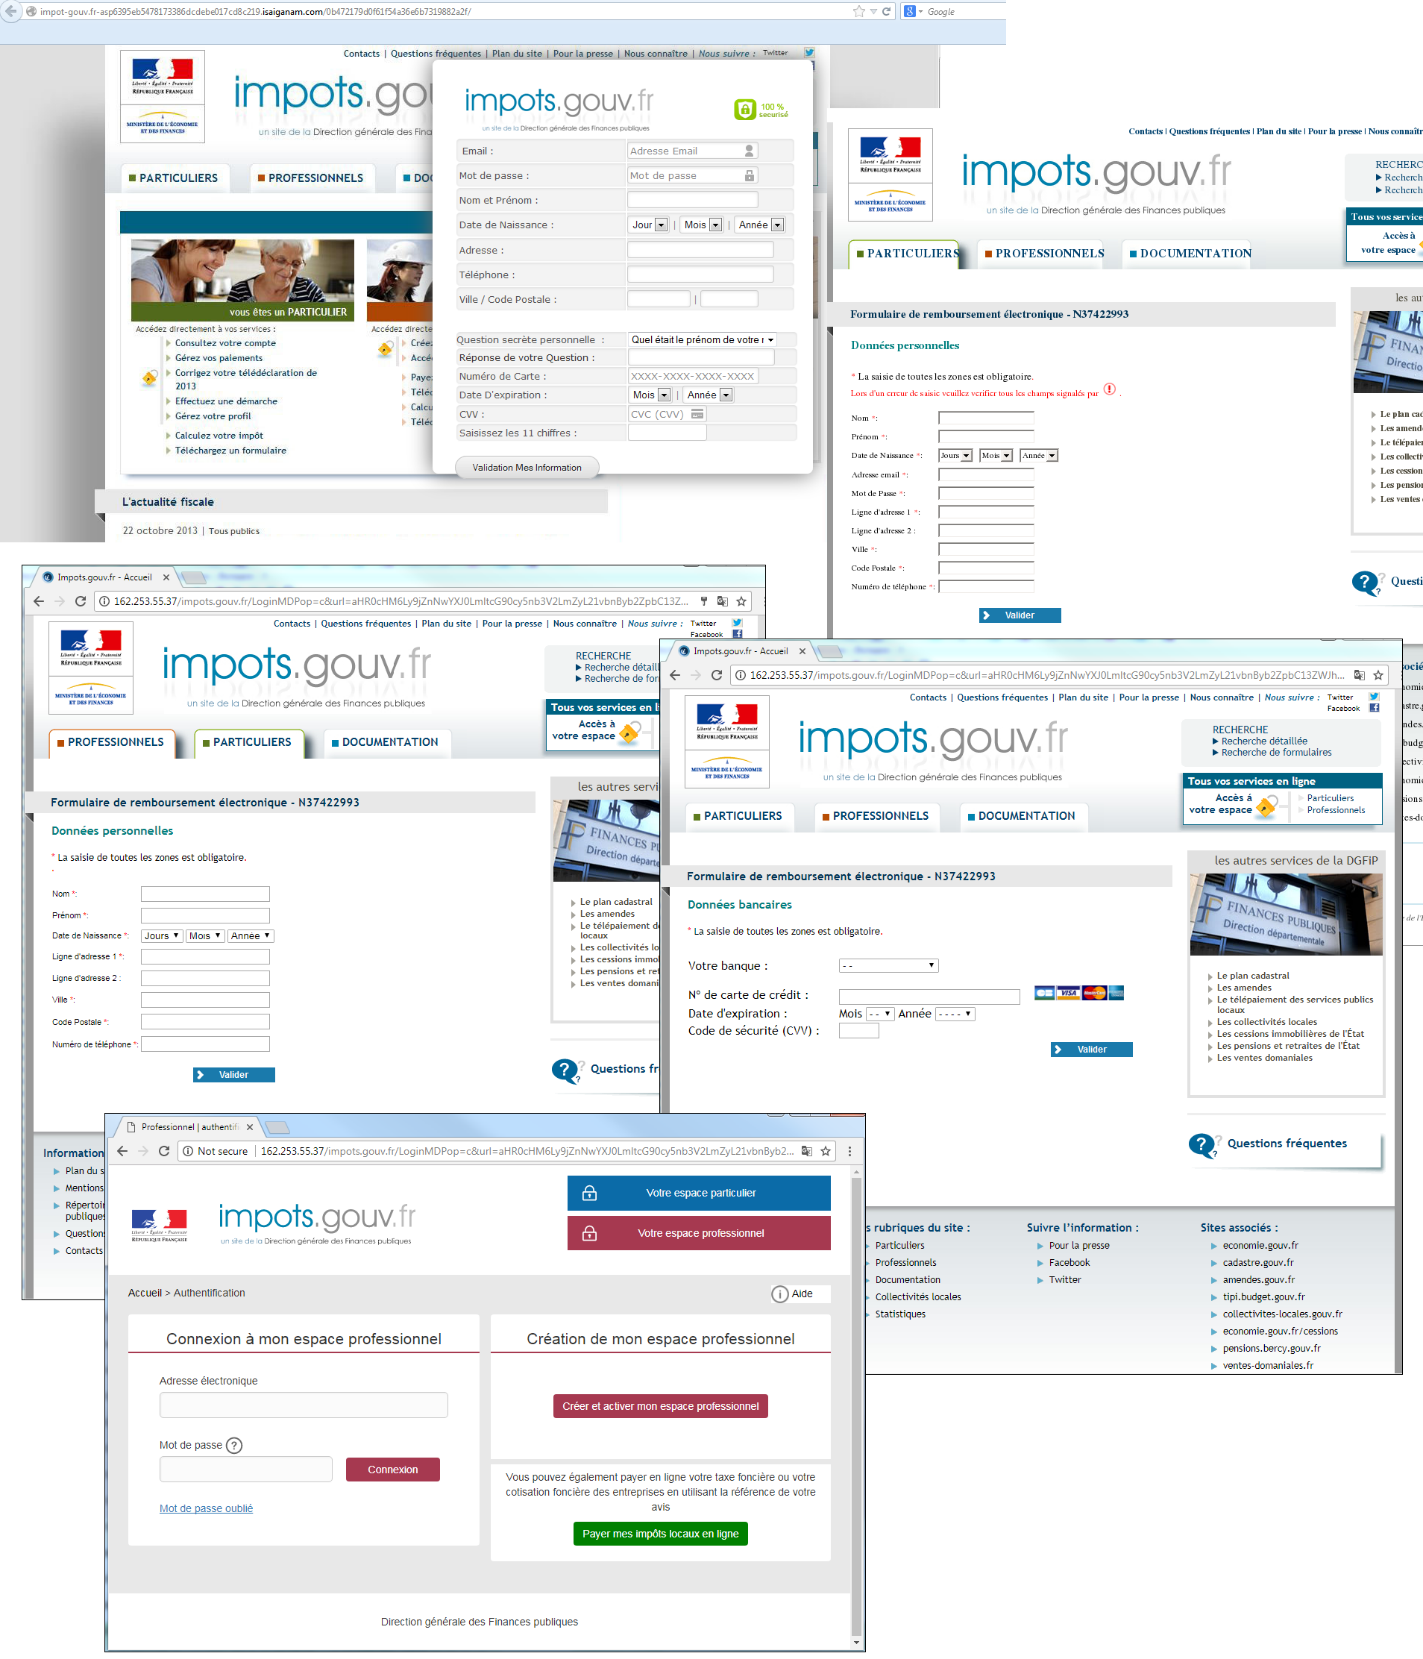 Приклади підробок сторінок податкової служби Франції